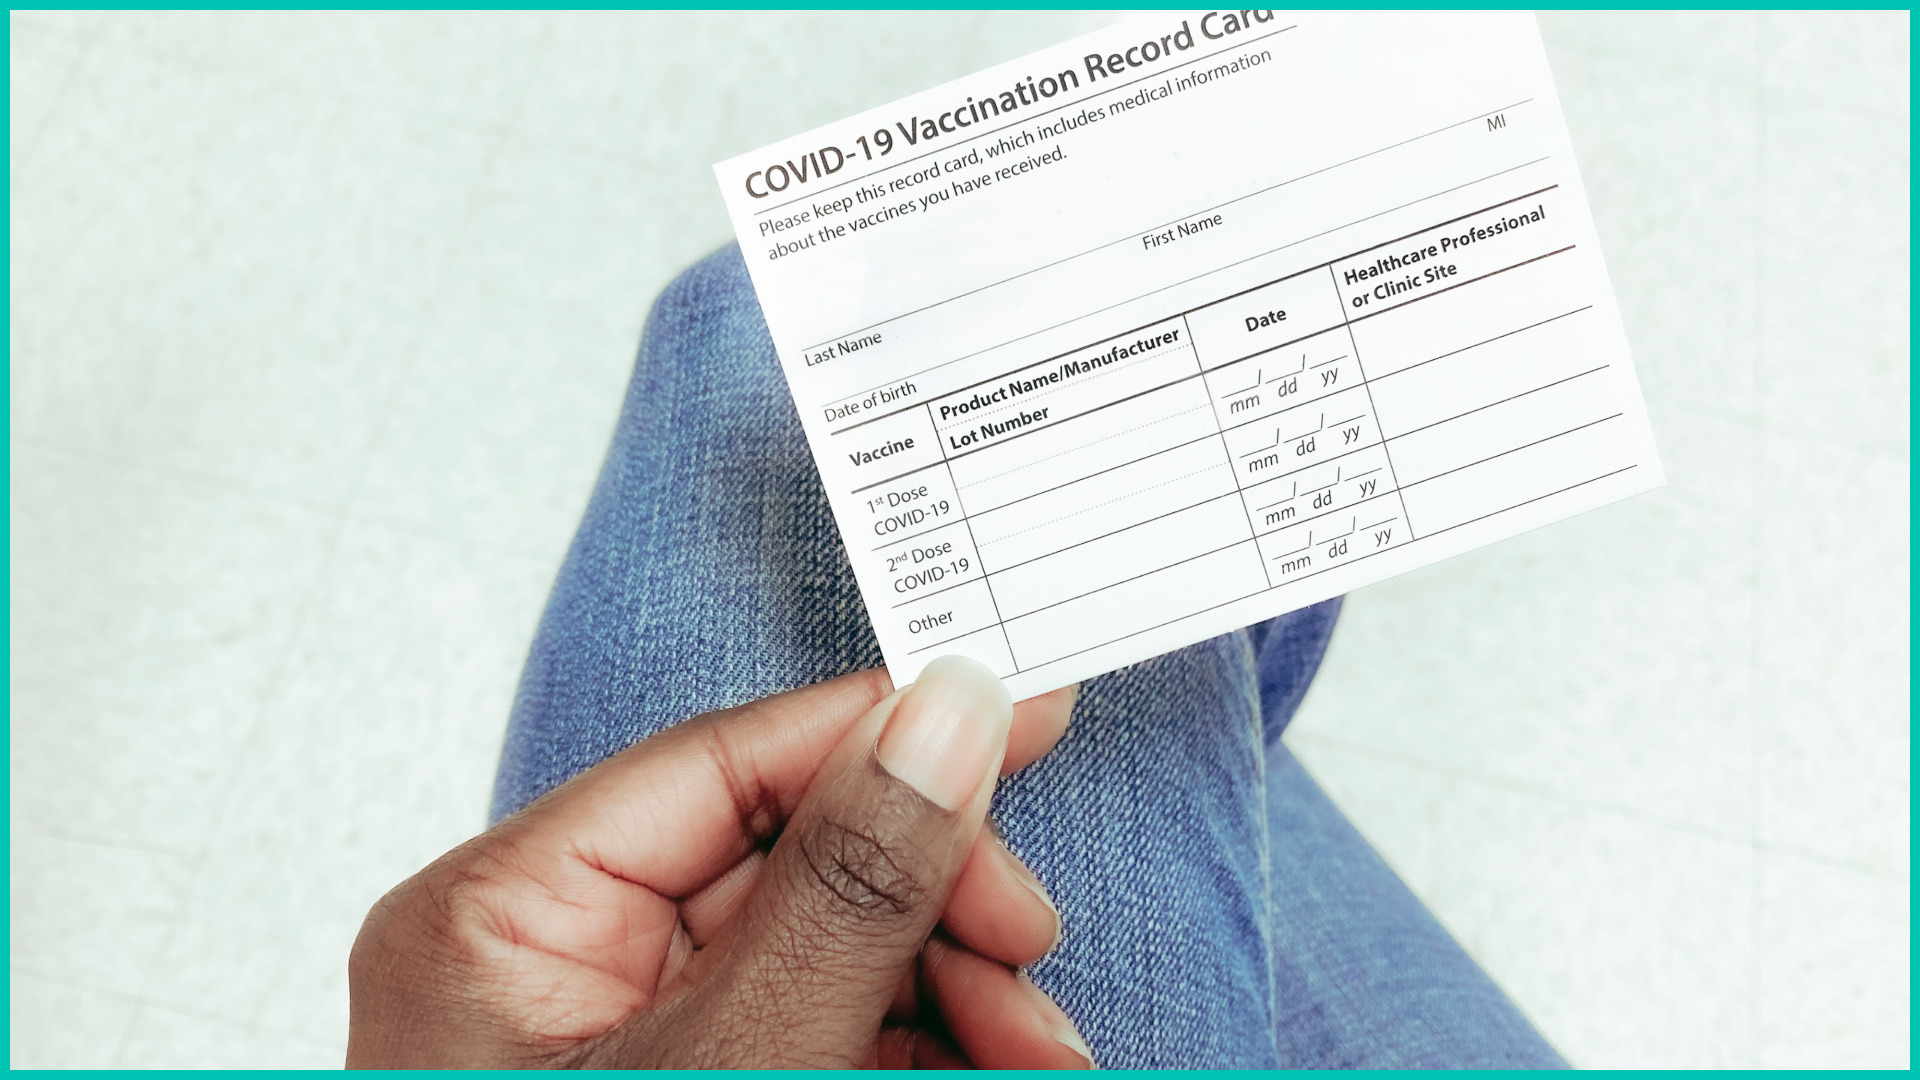  COVID-19 vaccination record card